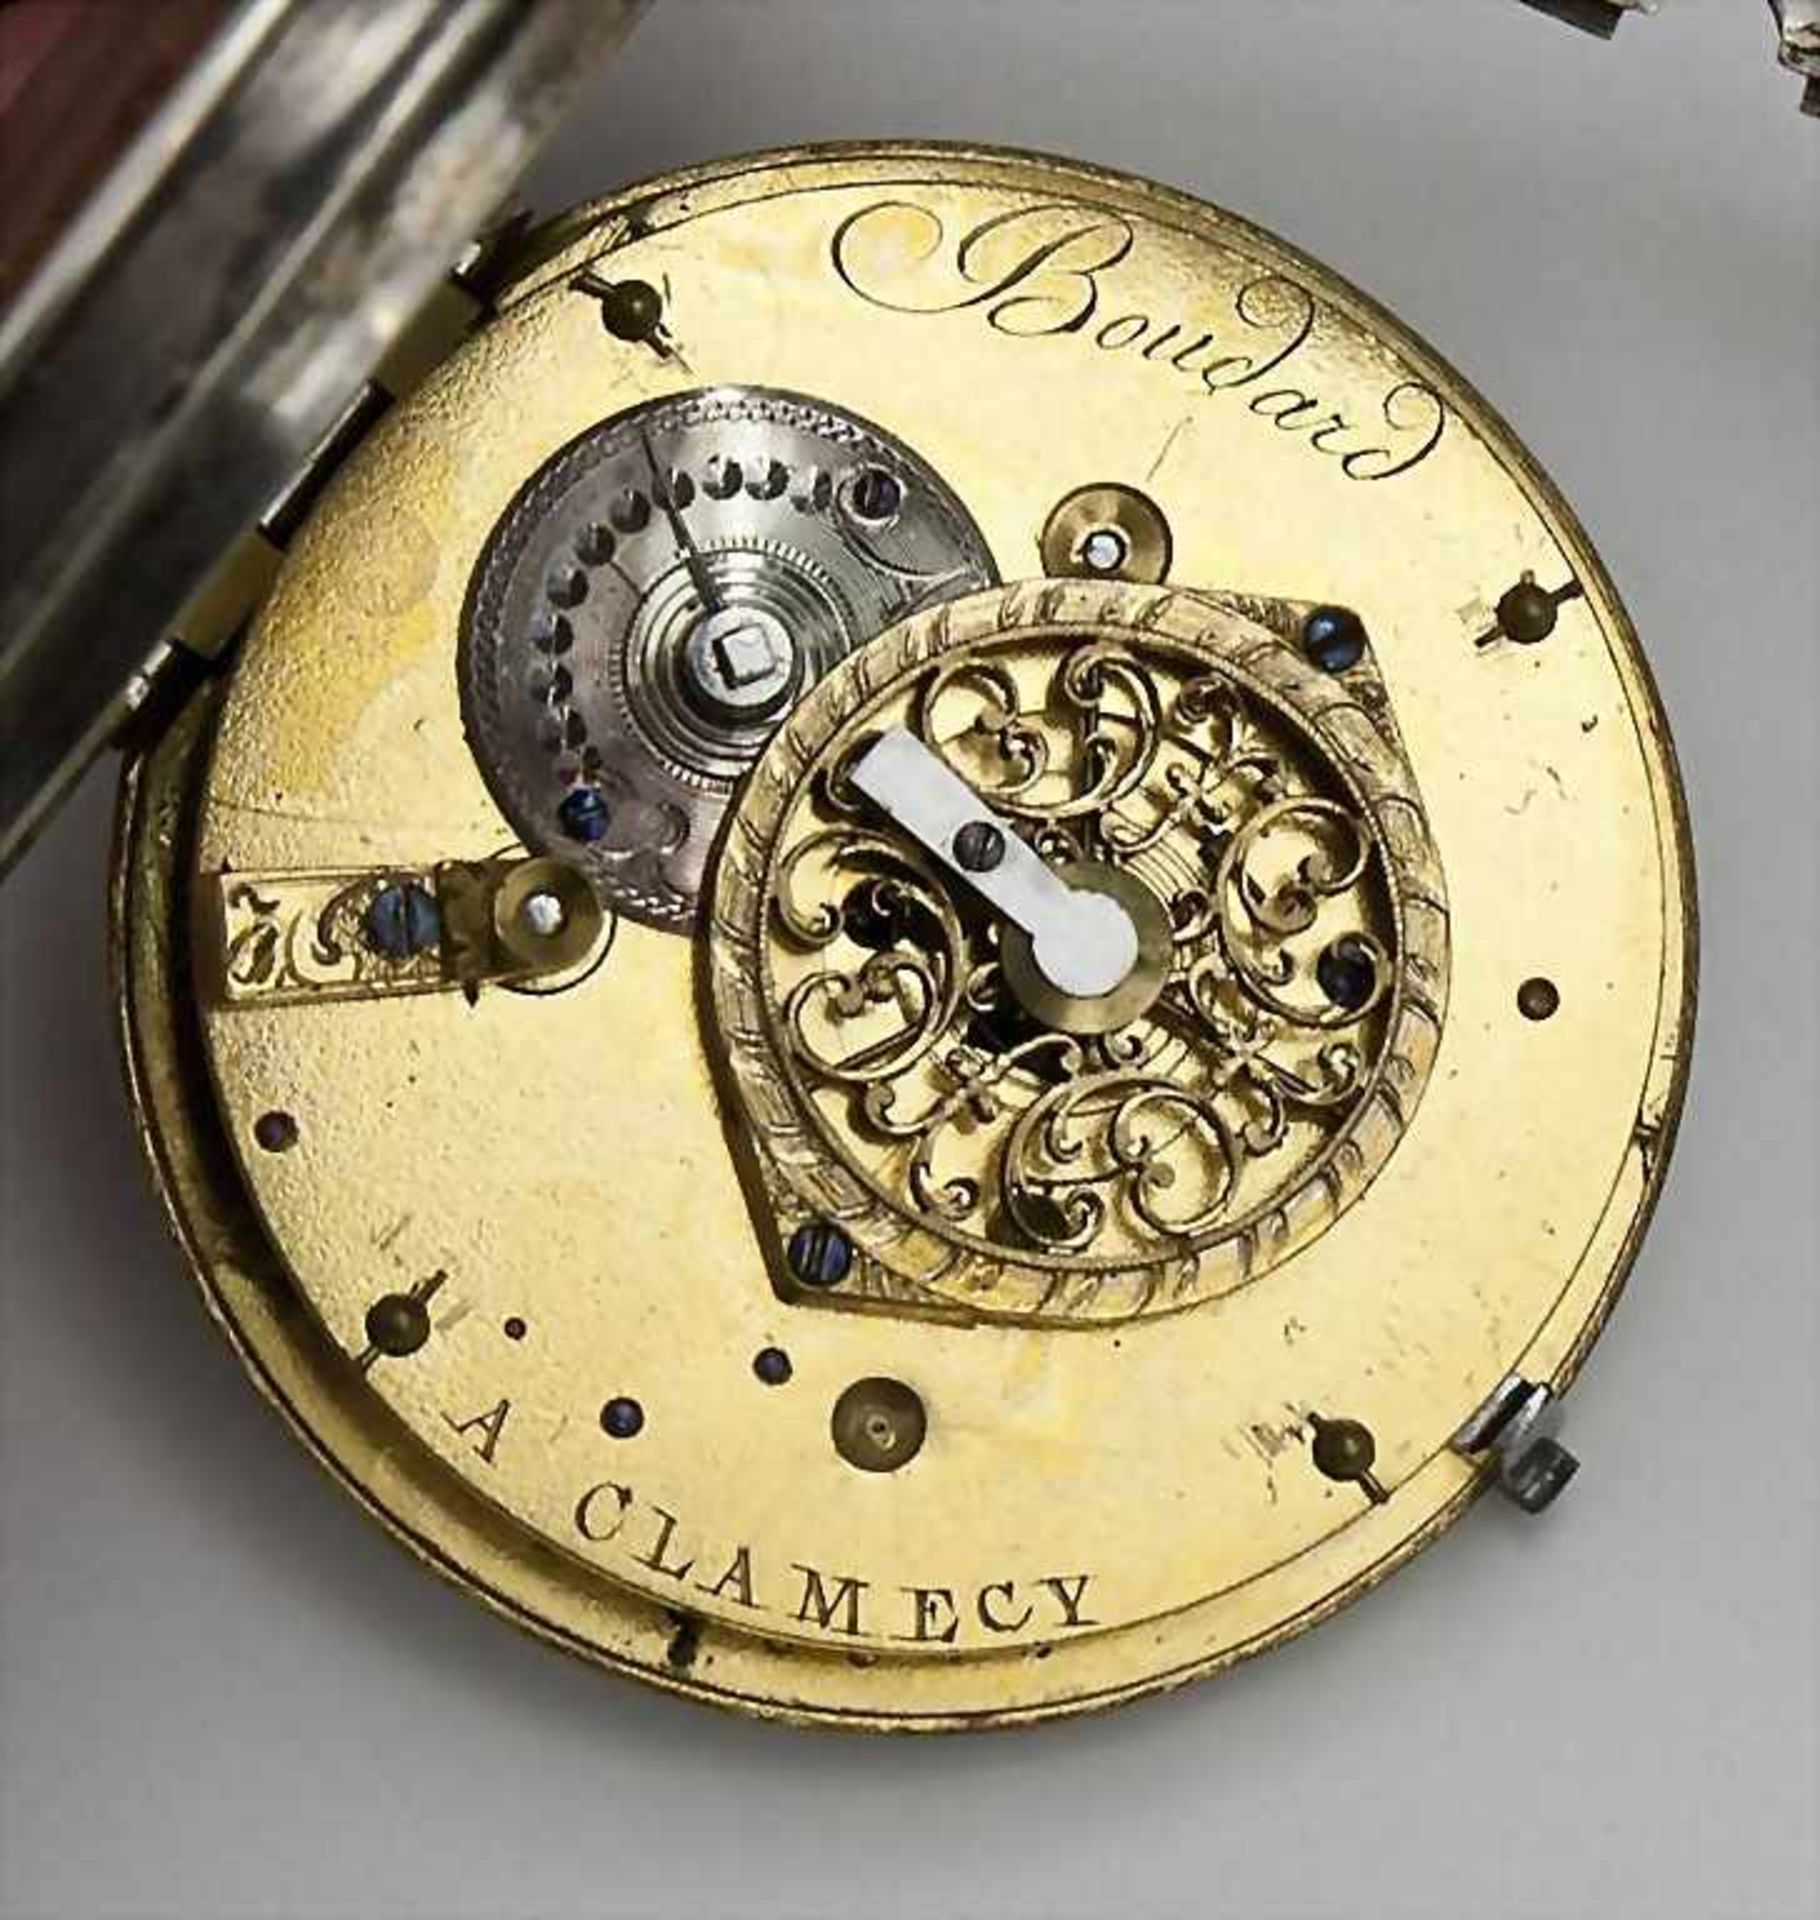 Spindel-HTU/Gents Silver Pocket Watch, Boudard a Clamecy, um 1820 Silbergehäuse gepunzt, mit - Bild 3 aus 4